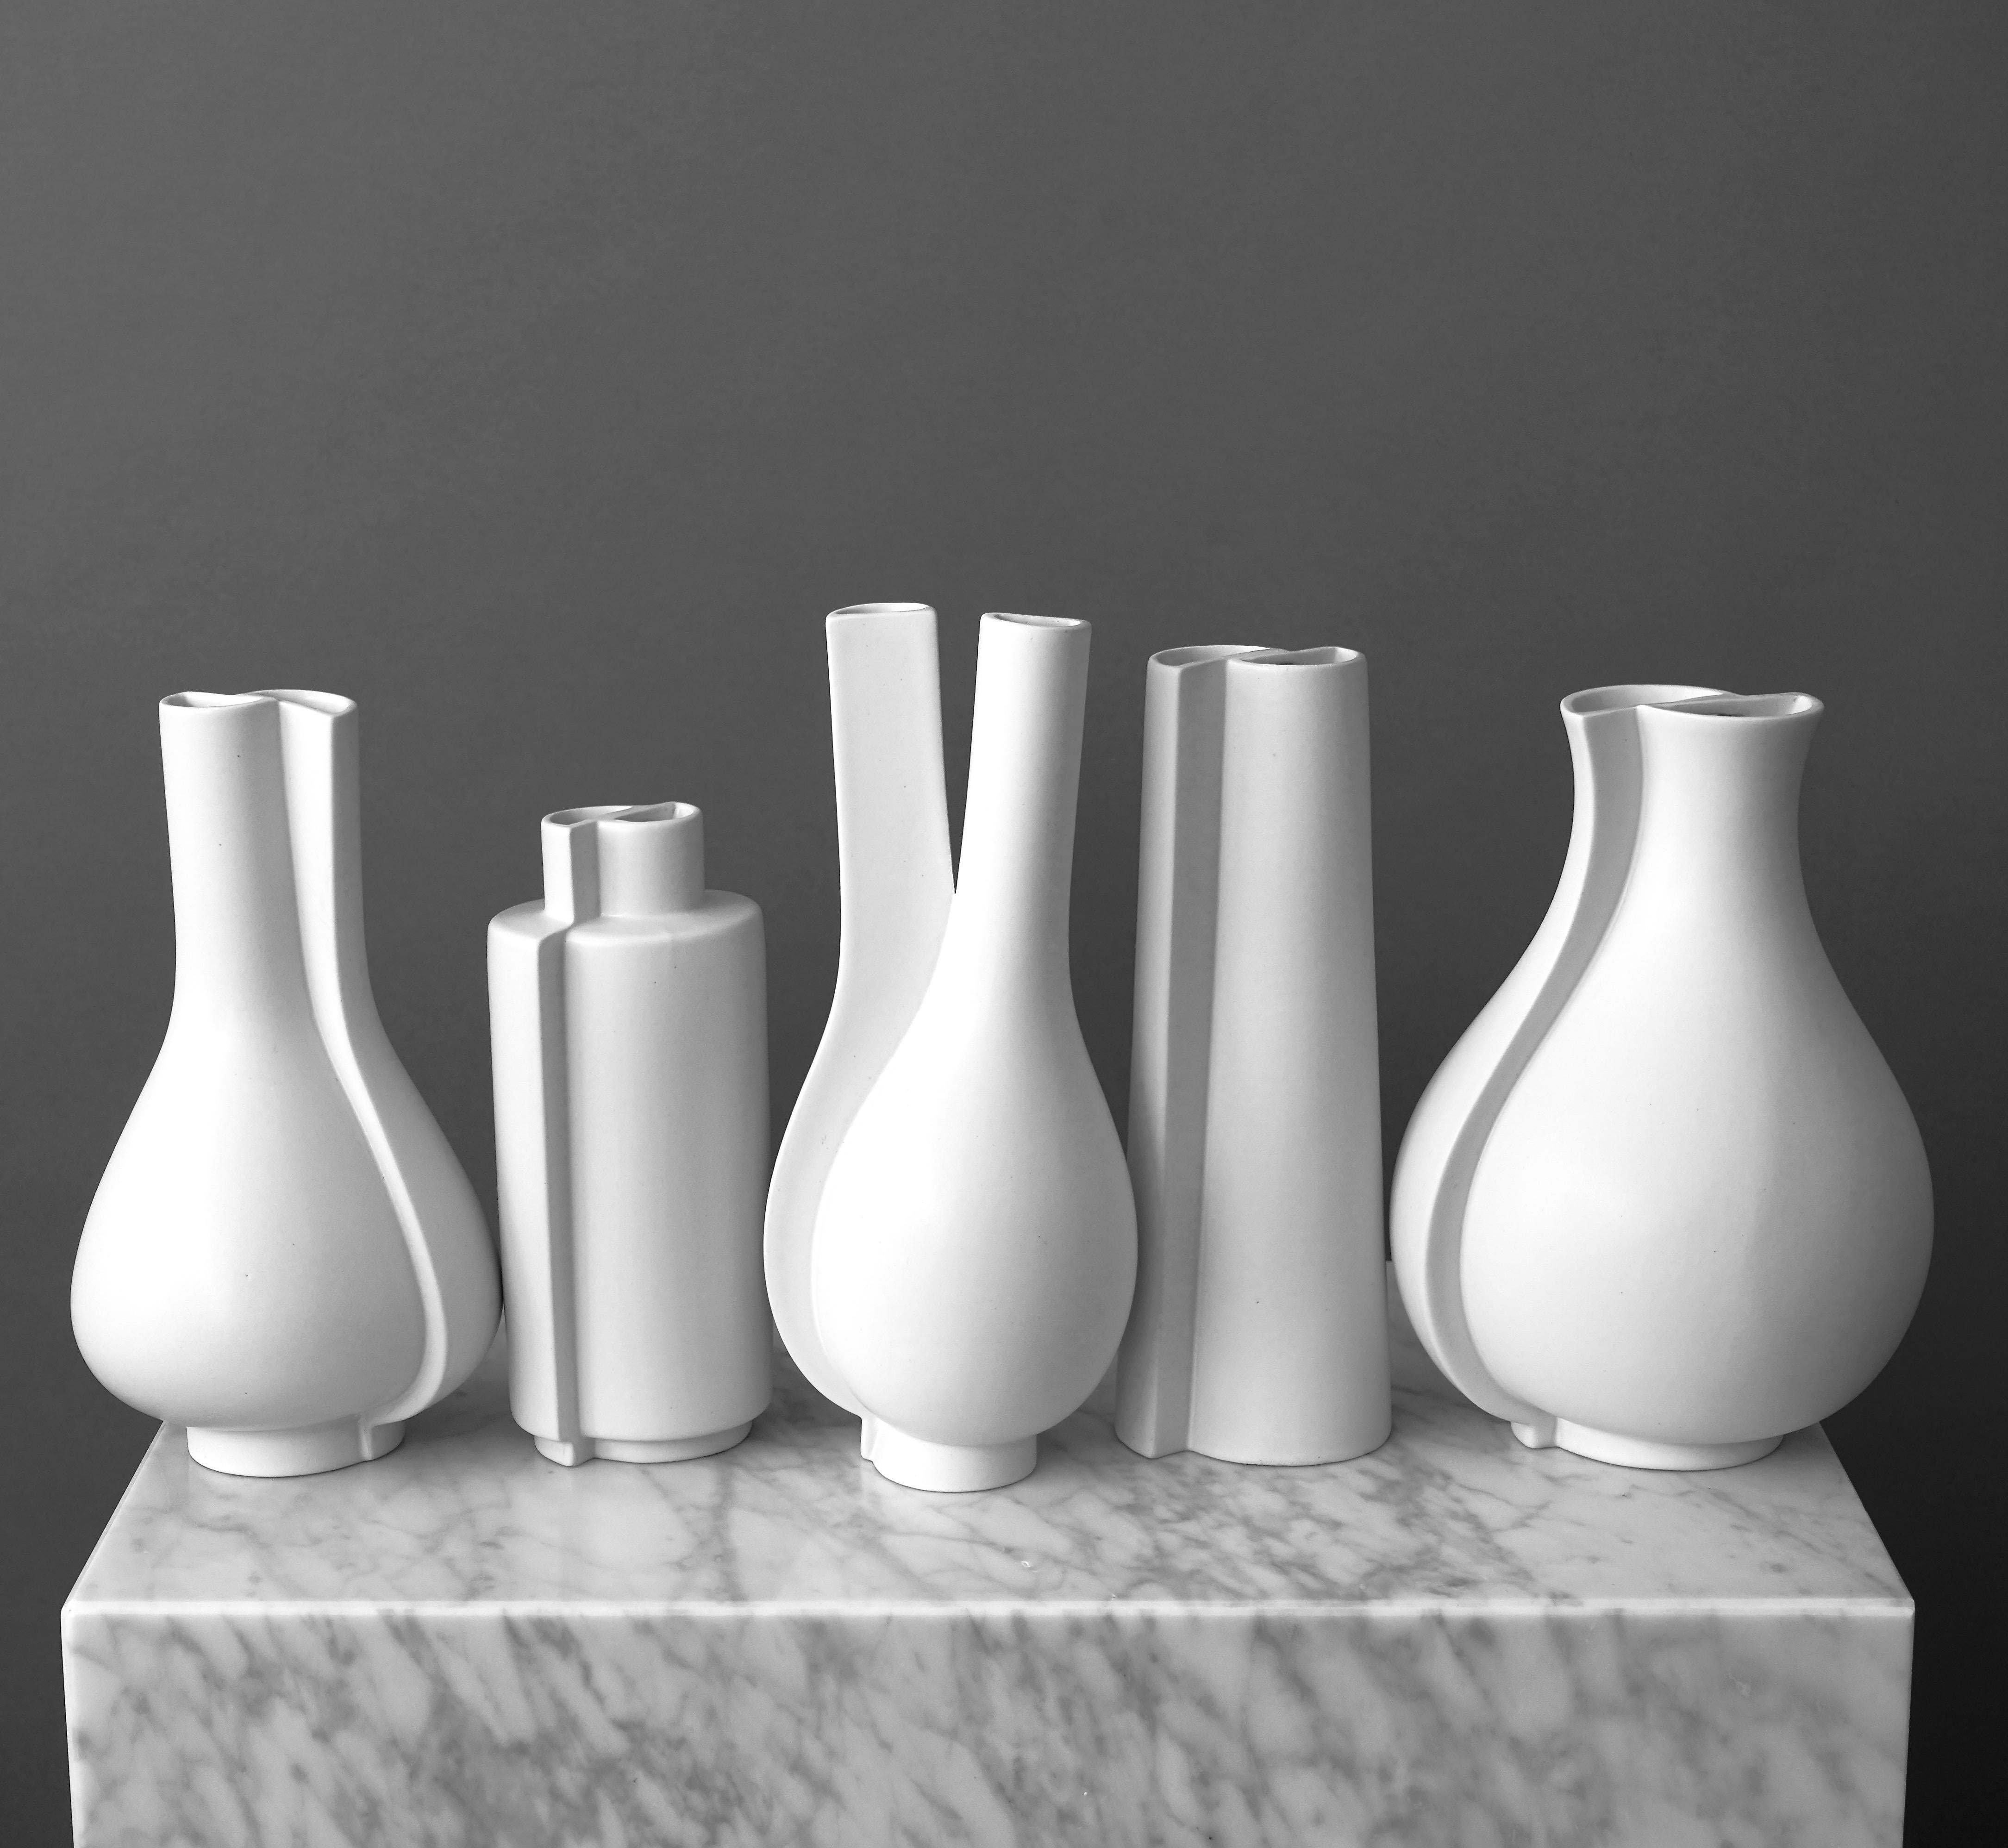 Cinq superbes vases en grès 'Surrea' avec émail 'Carrara'. 
Fabriqué par Wilhelm Kåge au Studio Gustavsberg en Suède, dans les années 1950. 

Excellent état. 
Estampillé 